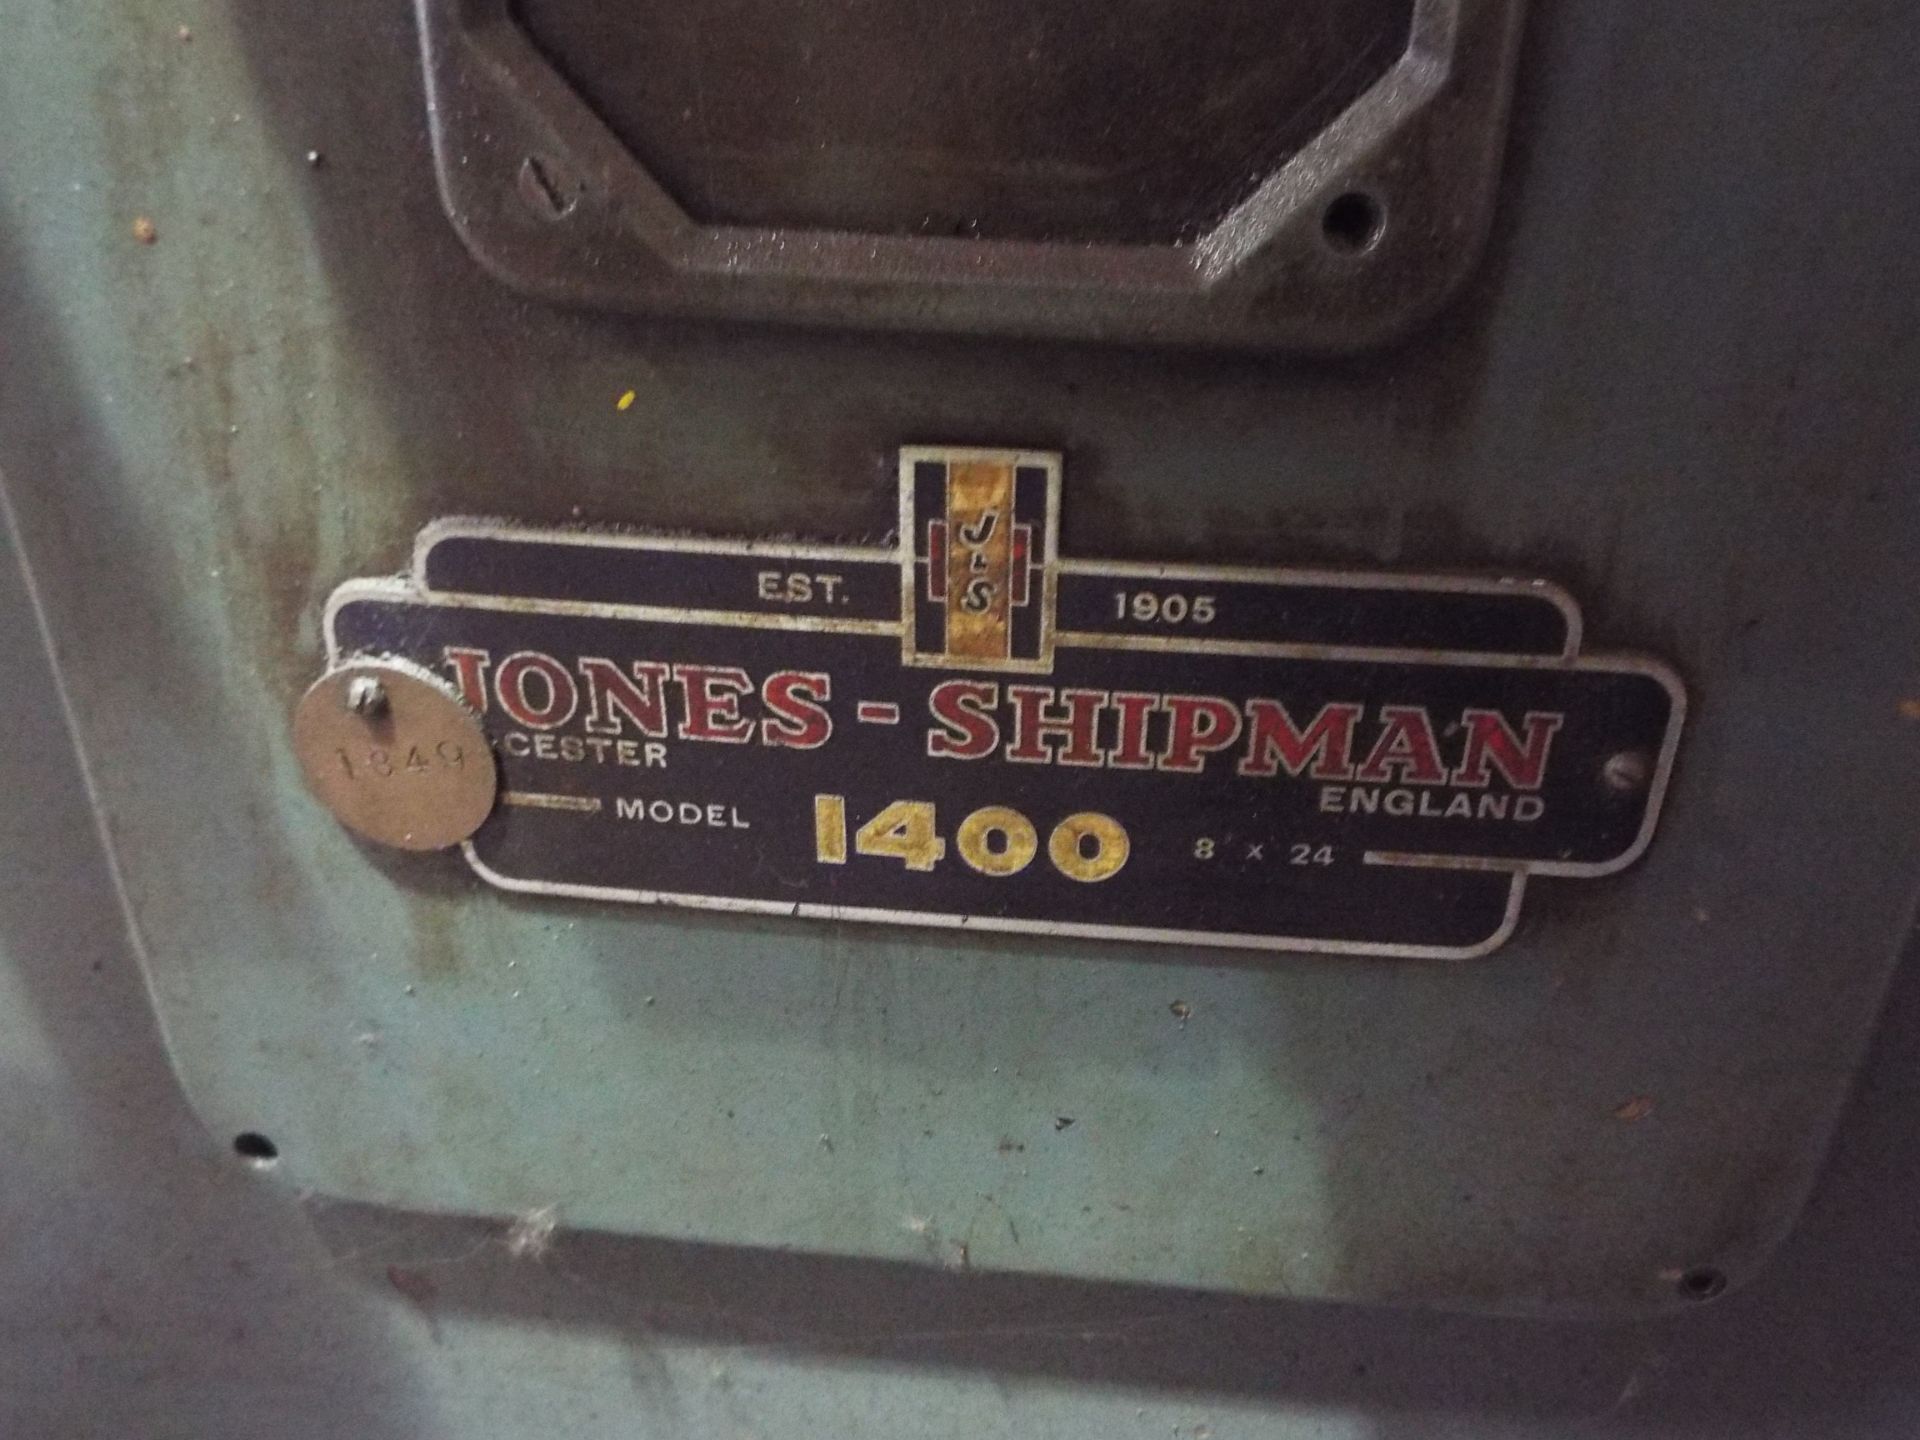 Jones & Shipman 1400 Surface Grinder - Image 2 of 5